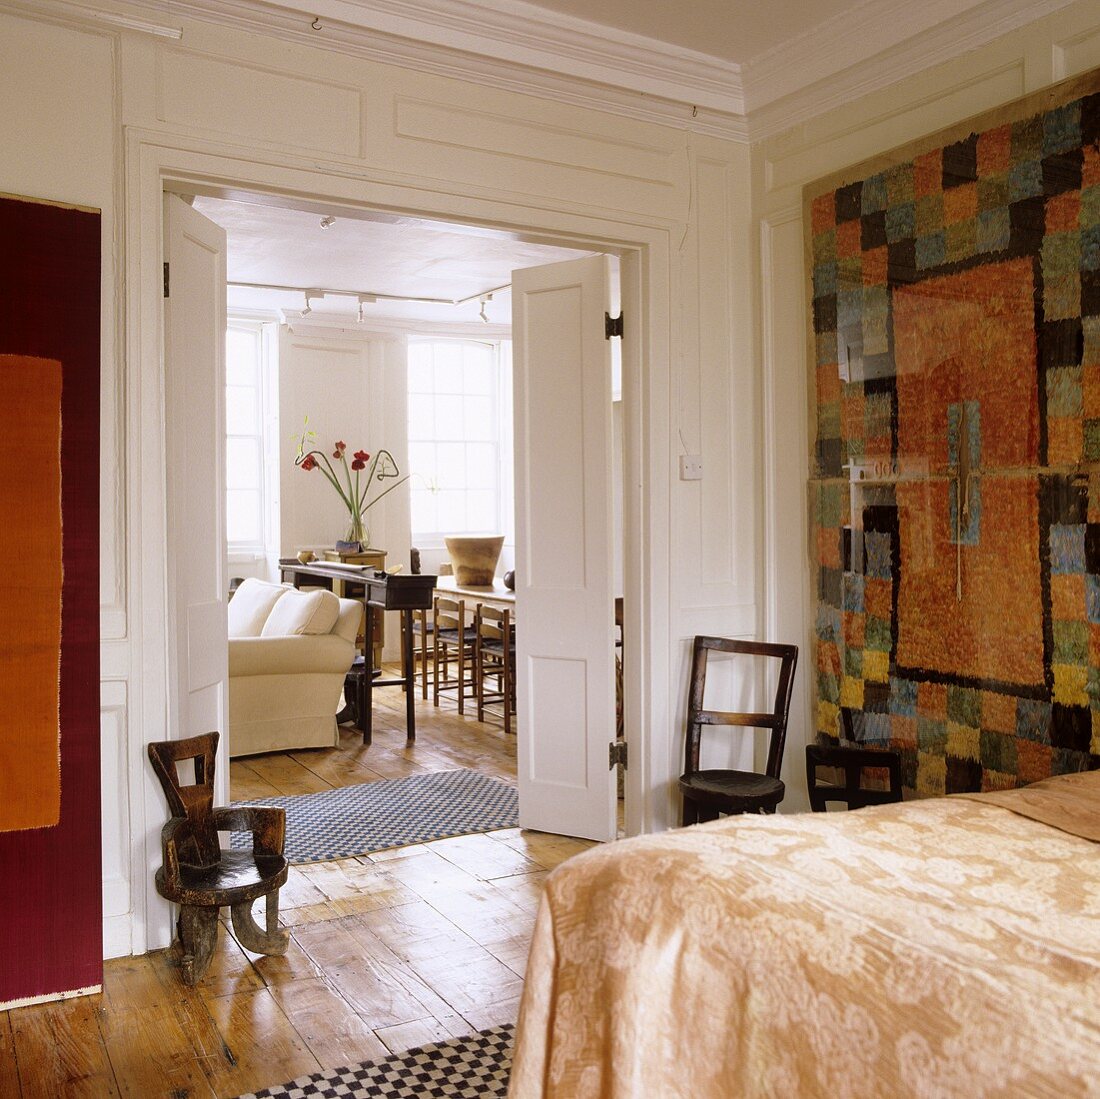 Moderner Wandteppich vor weiss vertäfelter Wand im Schlafraum mit Blick durch offene Flügeltür in Wohn- und Essraum